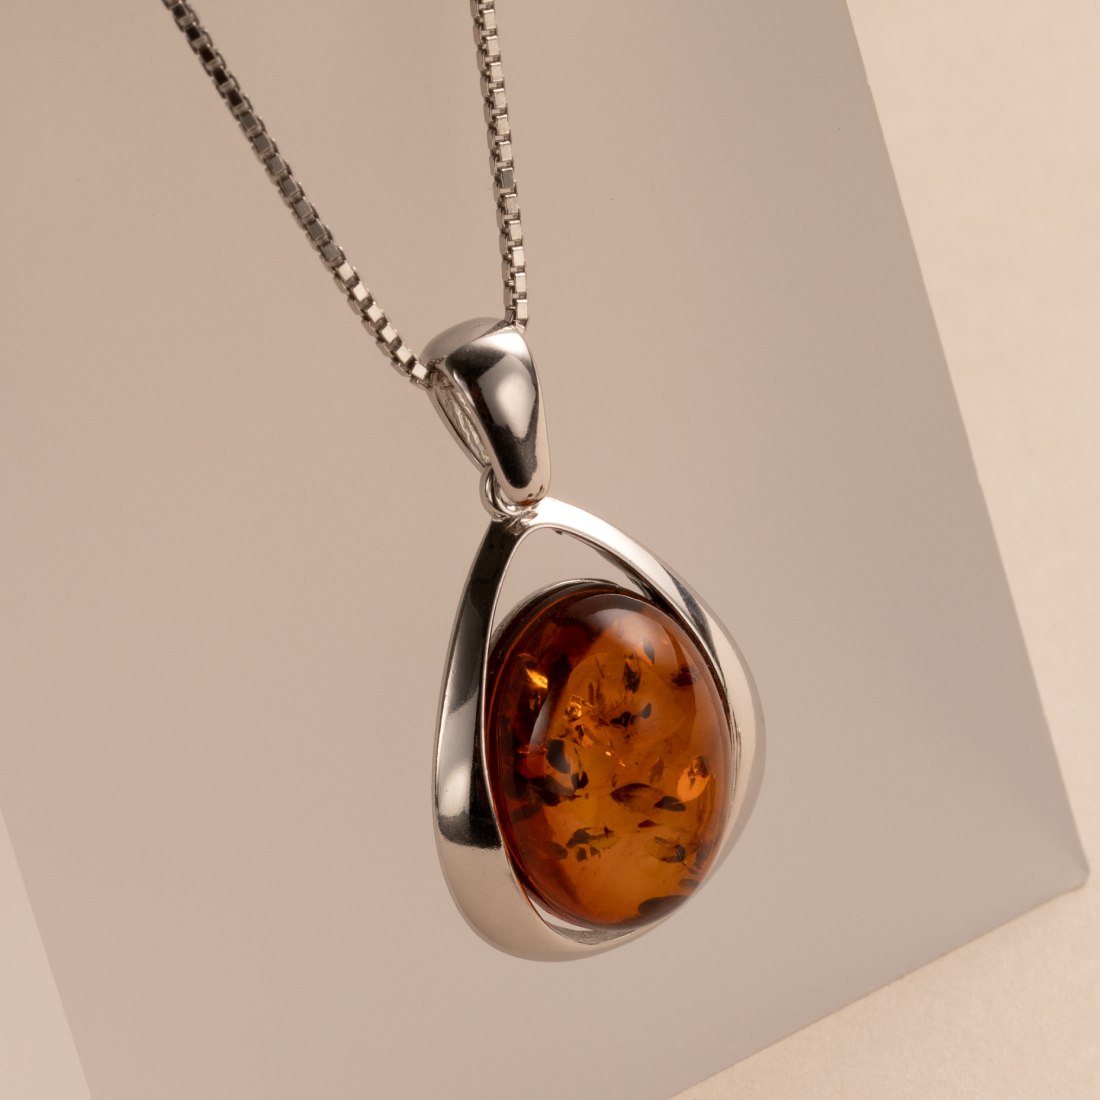 Vintage Sterling Silver Large Modernist Amber Pendant Necklace 25.8 Grams